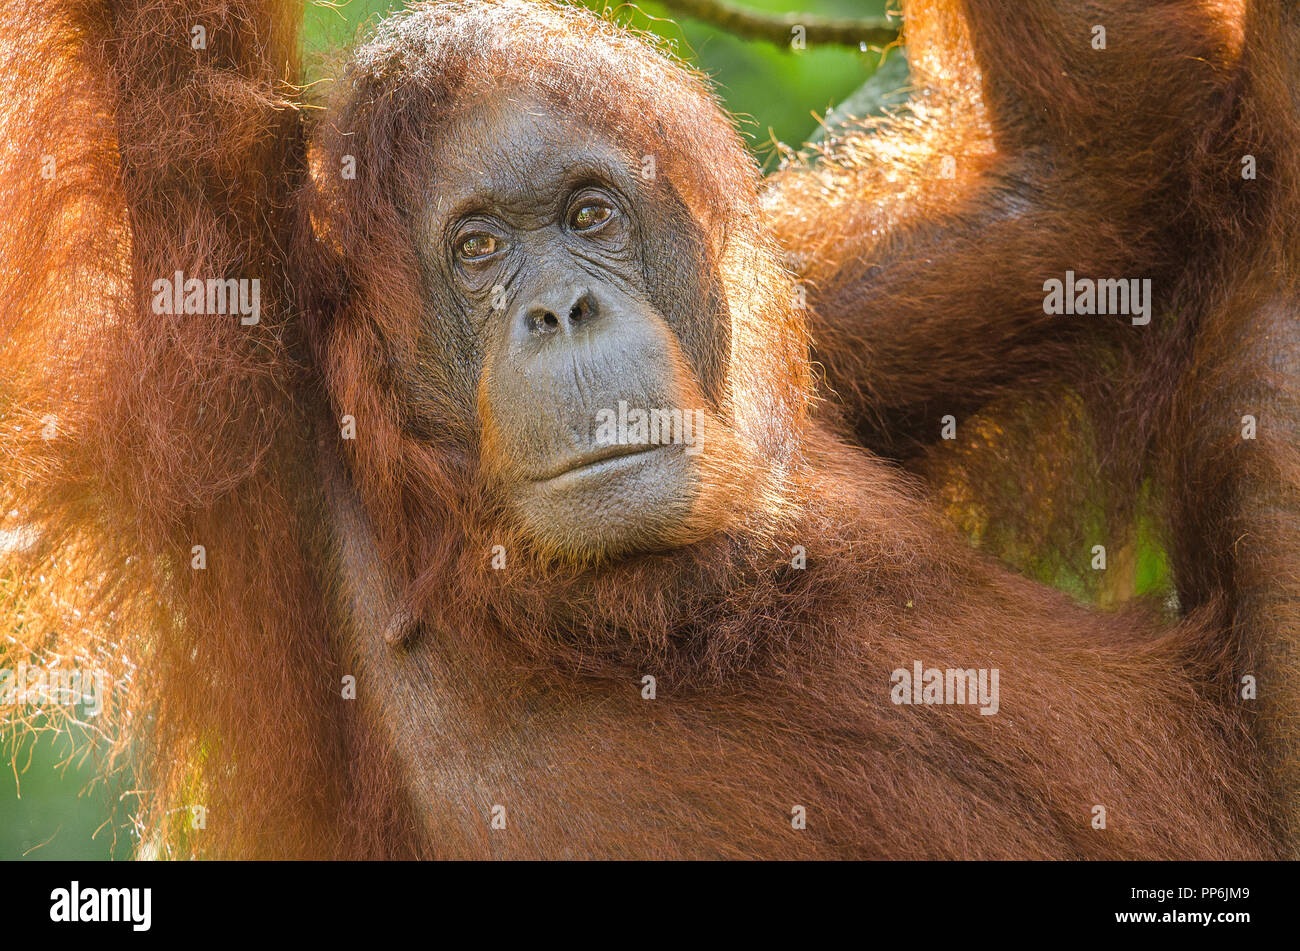 Ritratto di una femmina di orango appeso a un albero guardando la fotocamera Foto Stock